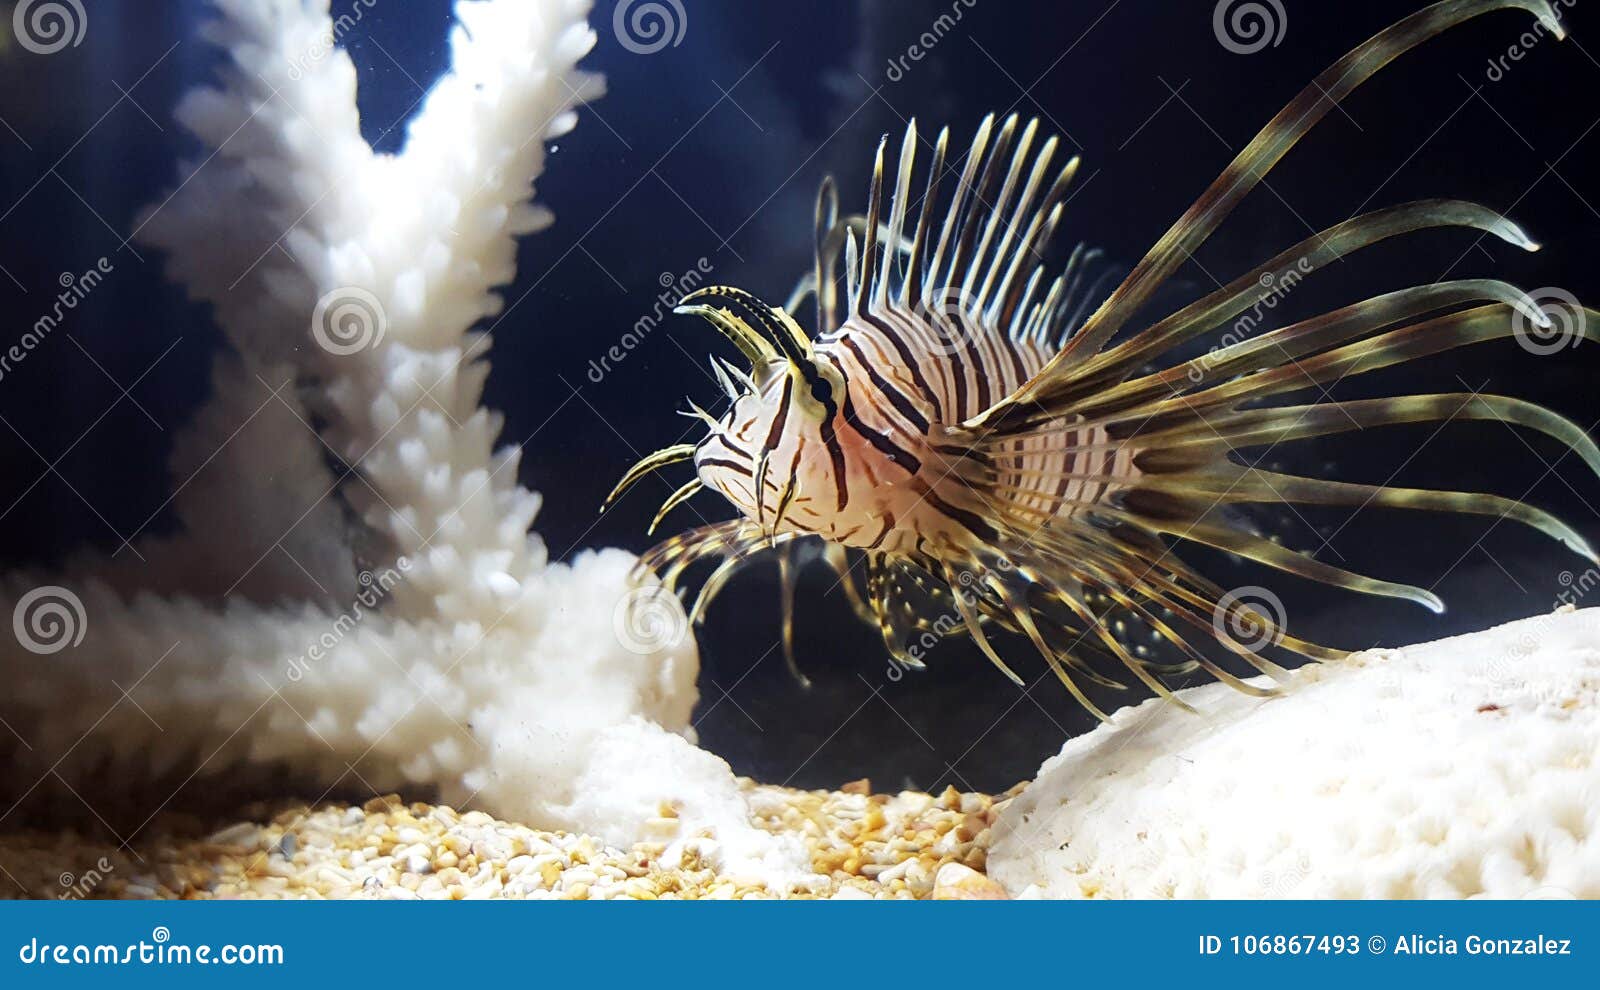 lion fish pterois volitans juveline close up